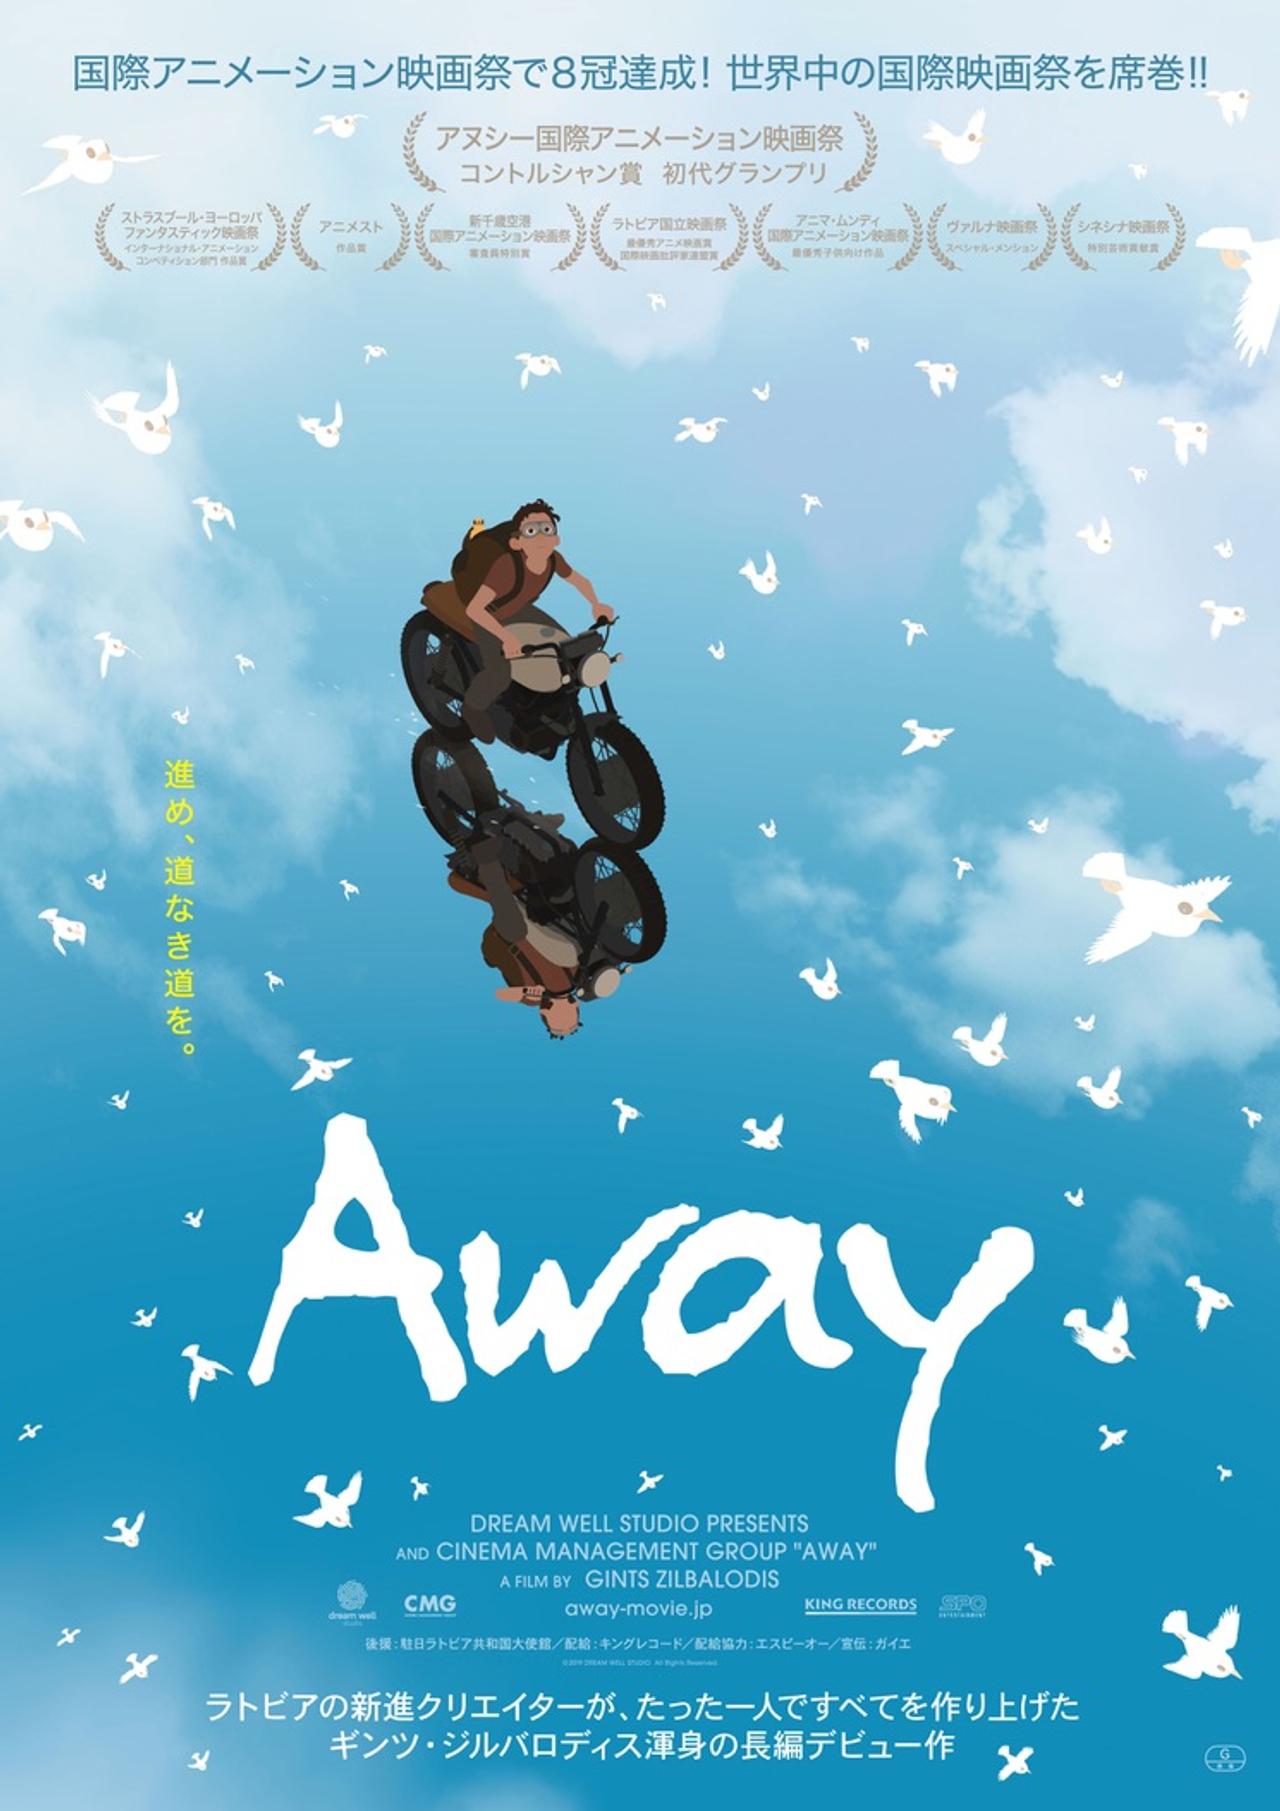 制作、監督、編集、音楽全部たったひとりで作った究極ぼっち映画『Away』。世界中の映画祭で9冠受賞